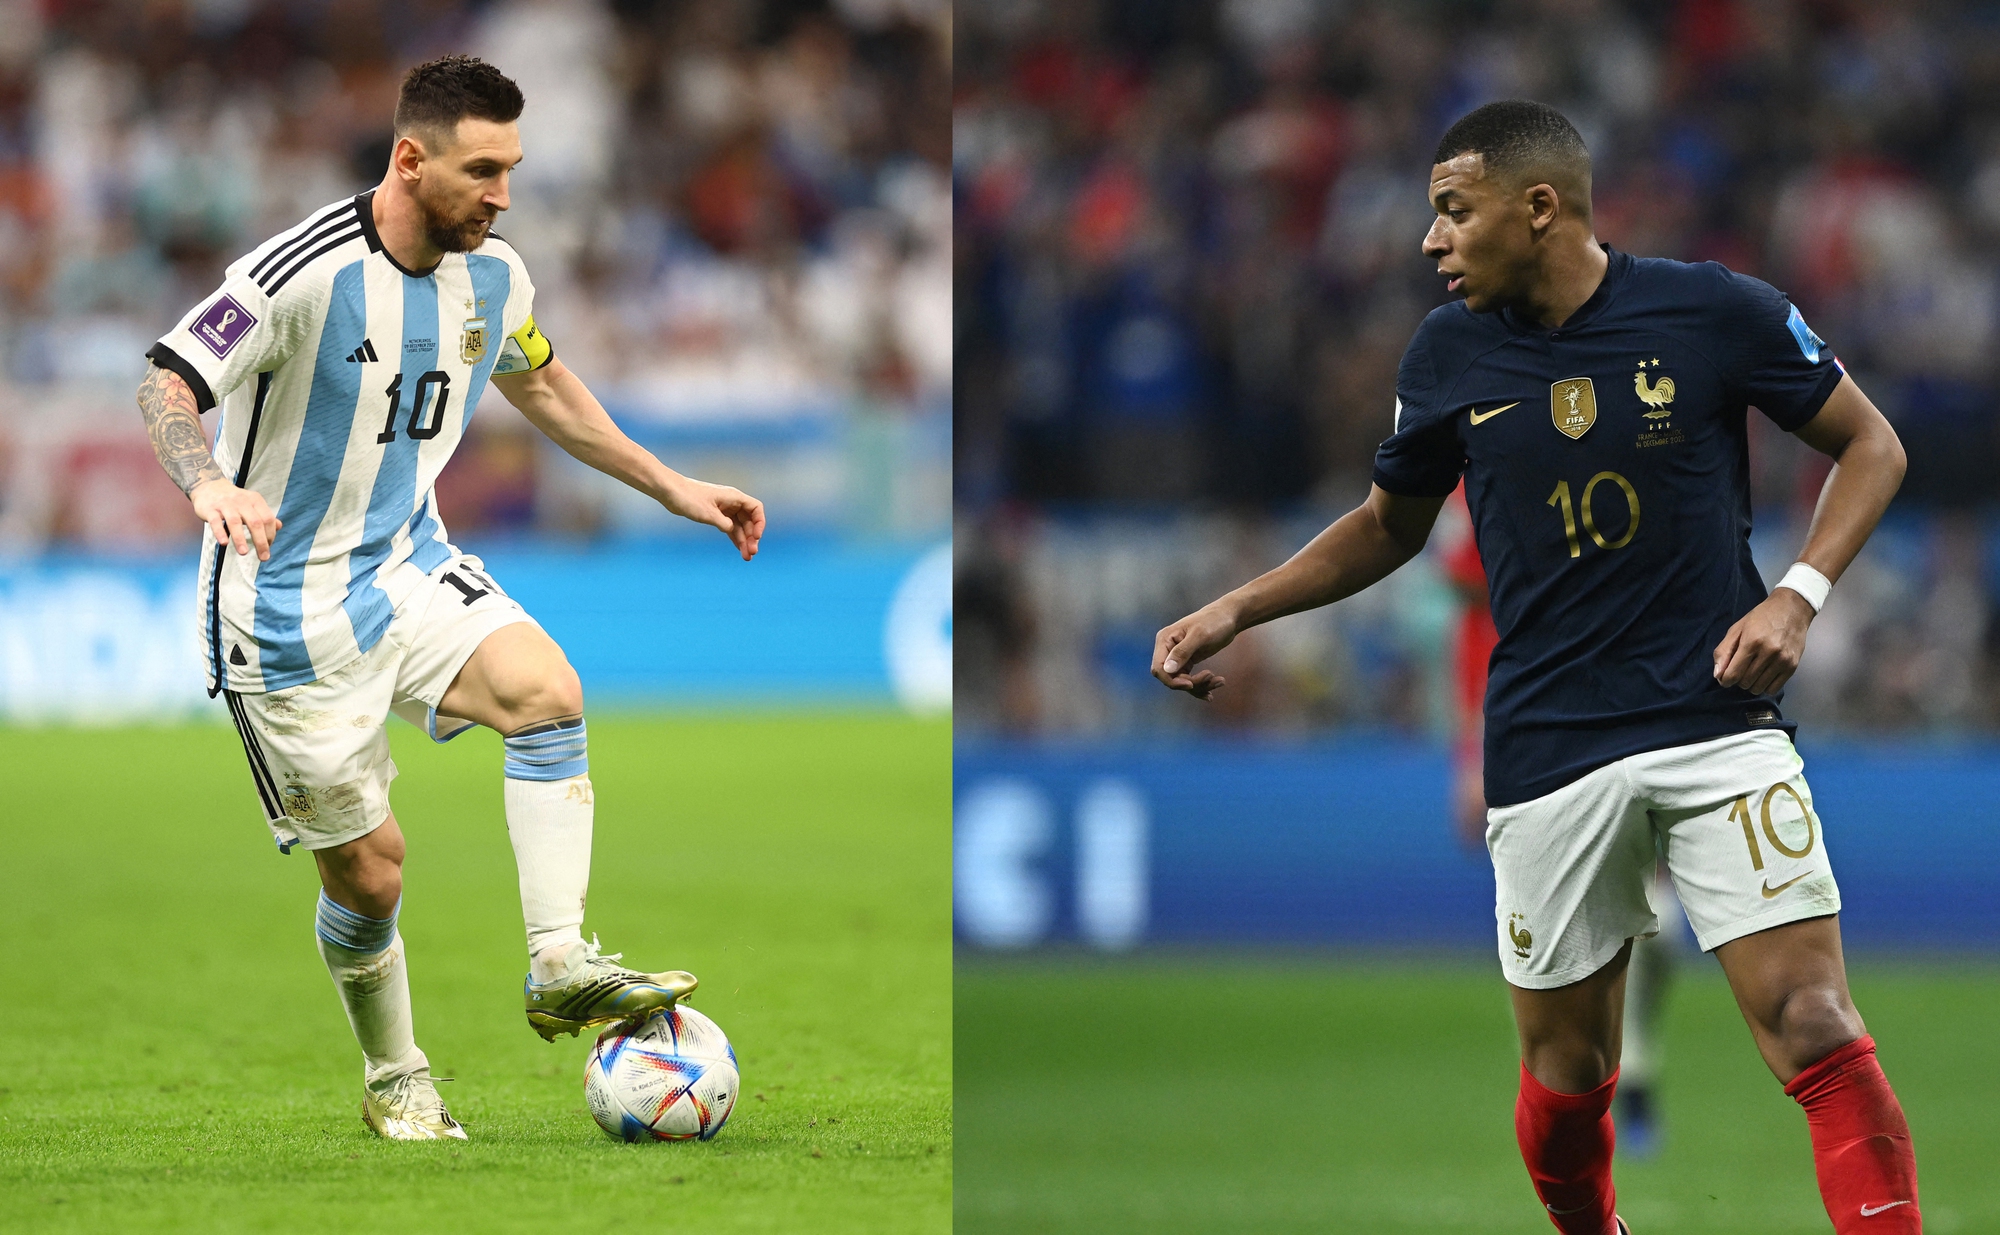 Chung kết 22 giờ, VTV3, cờ pháp và argentina: Tin vui cho những ai yêu thích bóng đá! Chung kết World Cup 2022 sẽ được giới thiệu trên VTV3 vào lúc 22 giờ với sự góp mặt của Argentina và Pháp. Hãy đến với hình ảnh để thưởng thức trận đấu đỉnh cao này.